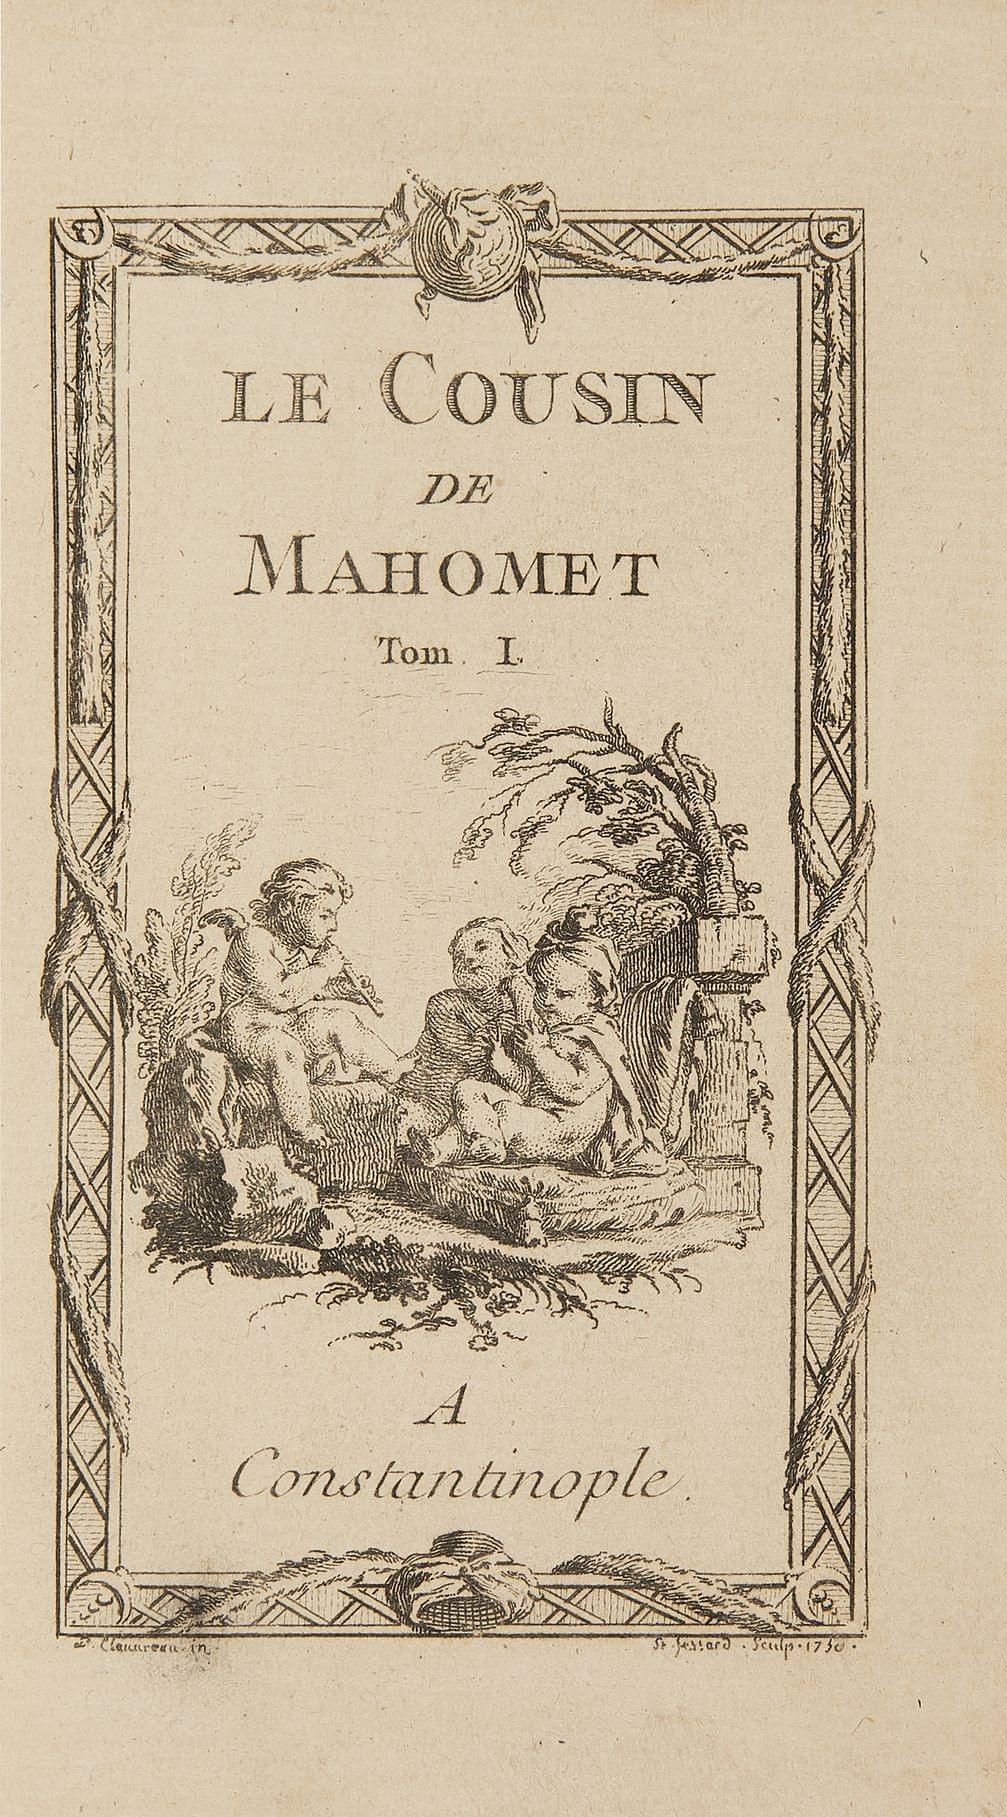 FROMAGET: Le cousin de Mahomet. A Constantinople (Paris), s.d. (1750); 